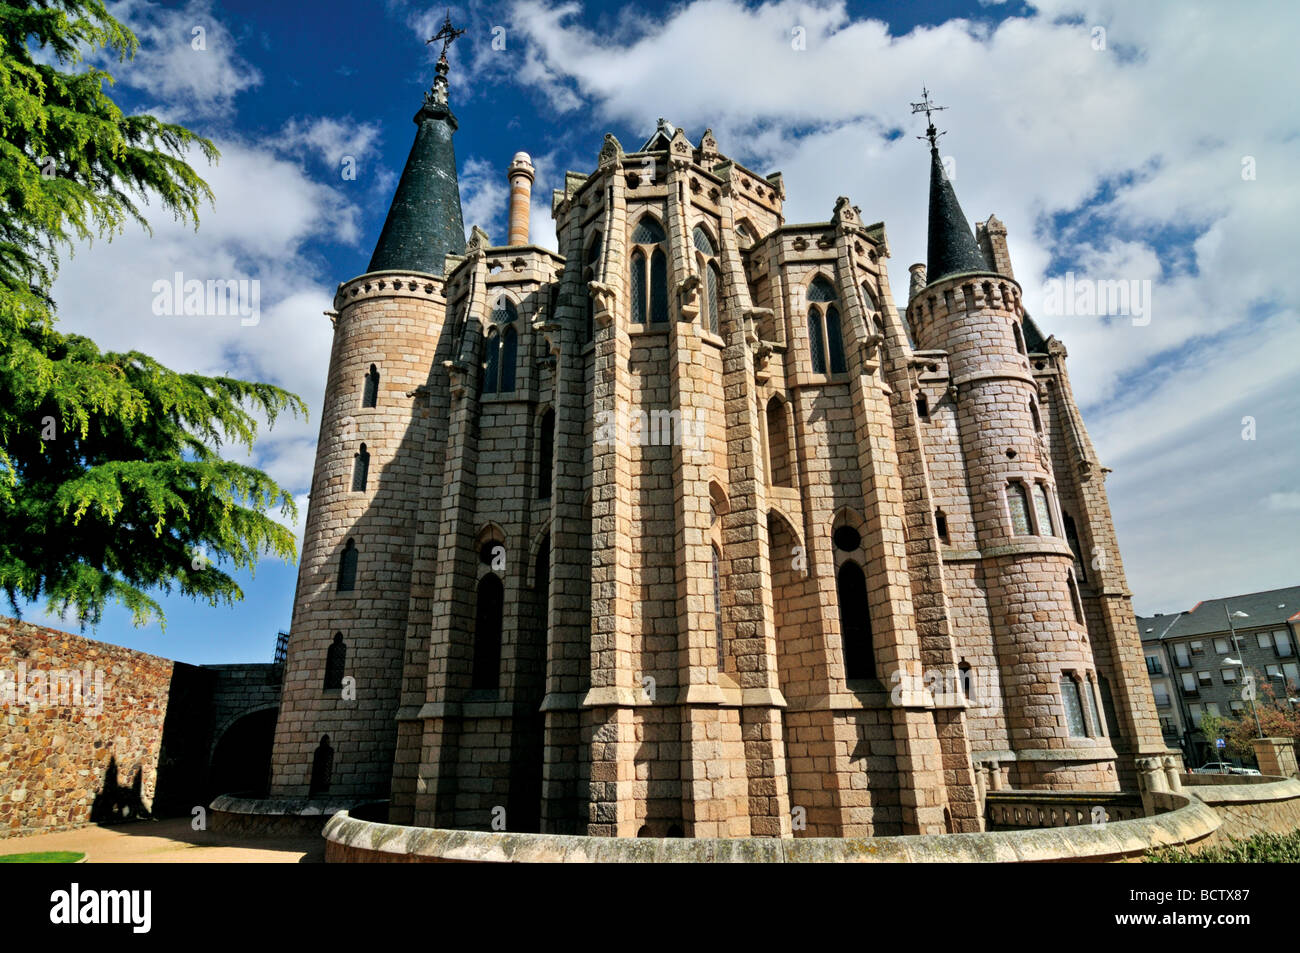 Spain, Astorga: Bishops palace by Antonio Gaudí Stock Photo